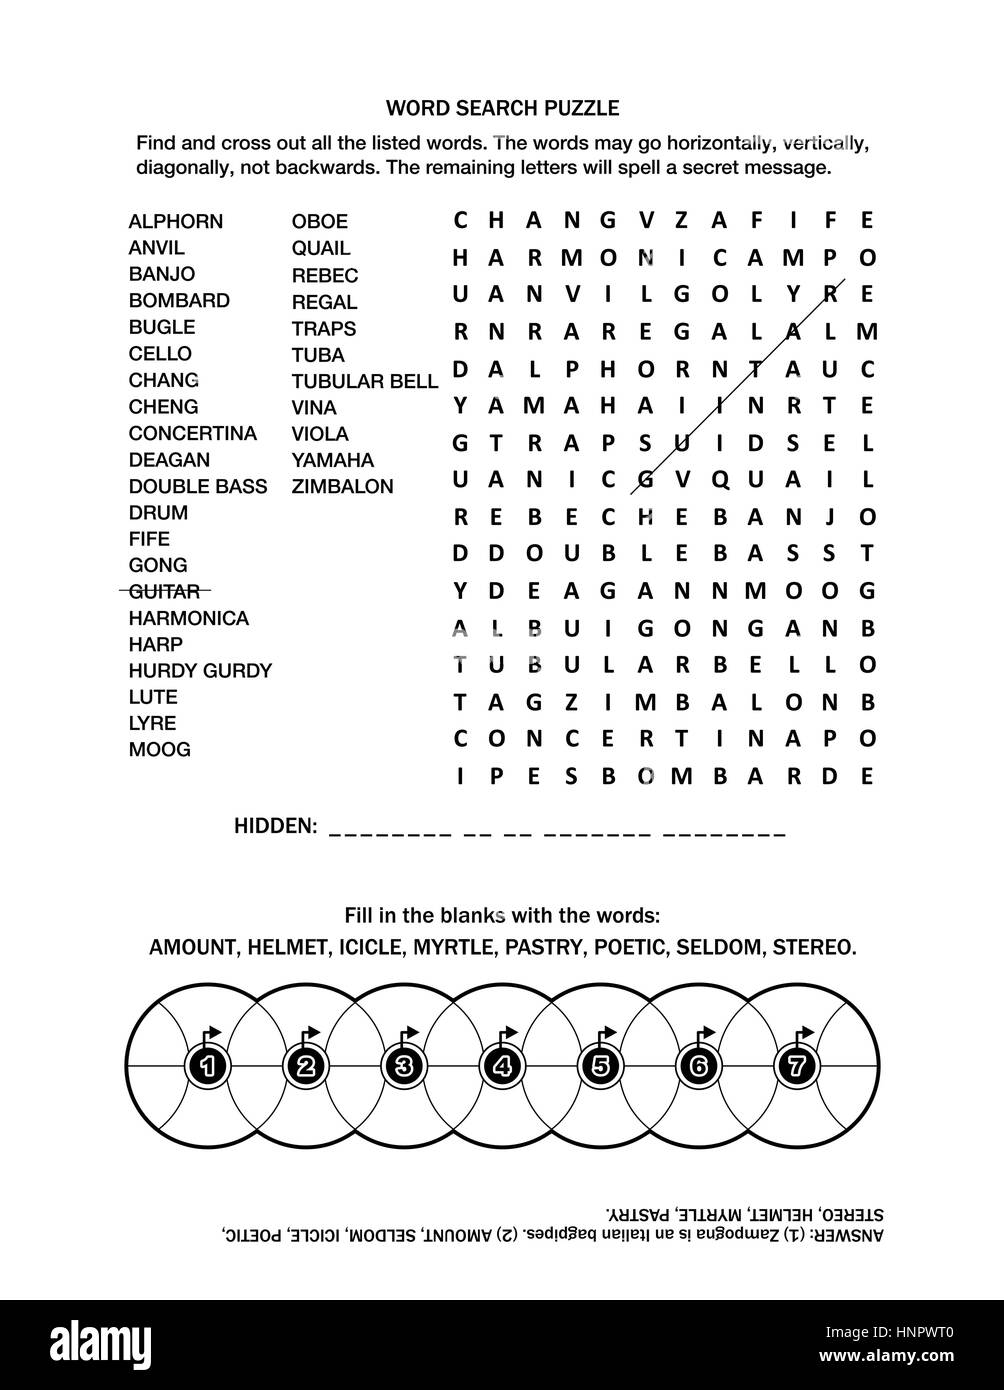 Pagina di puzzle con due giochi di parole (lingua inglese) per adulti o  bambini. Bianco e nero, A4 o formato letter. Risposta inclusa Immagine e  Vettoriale - Alamy